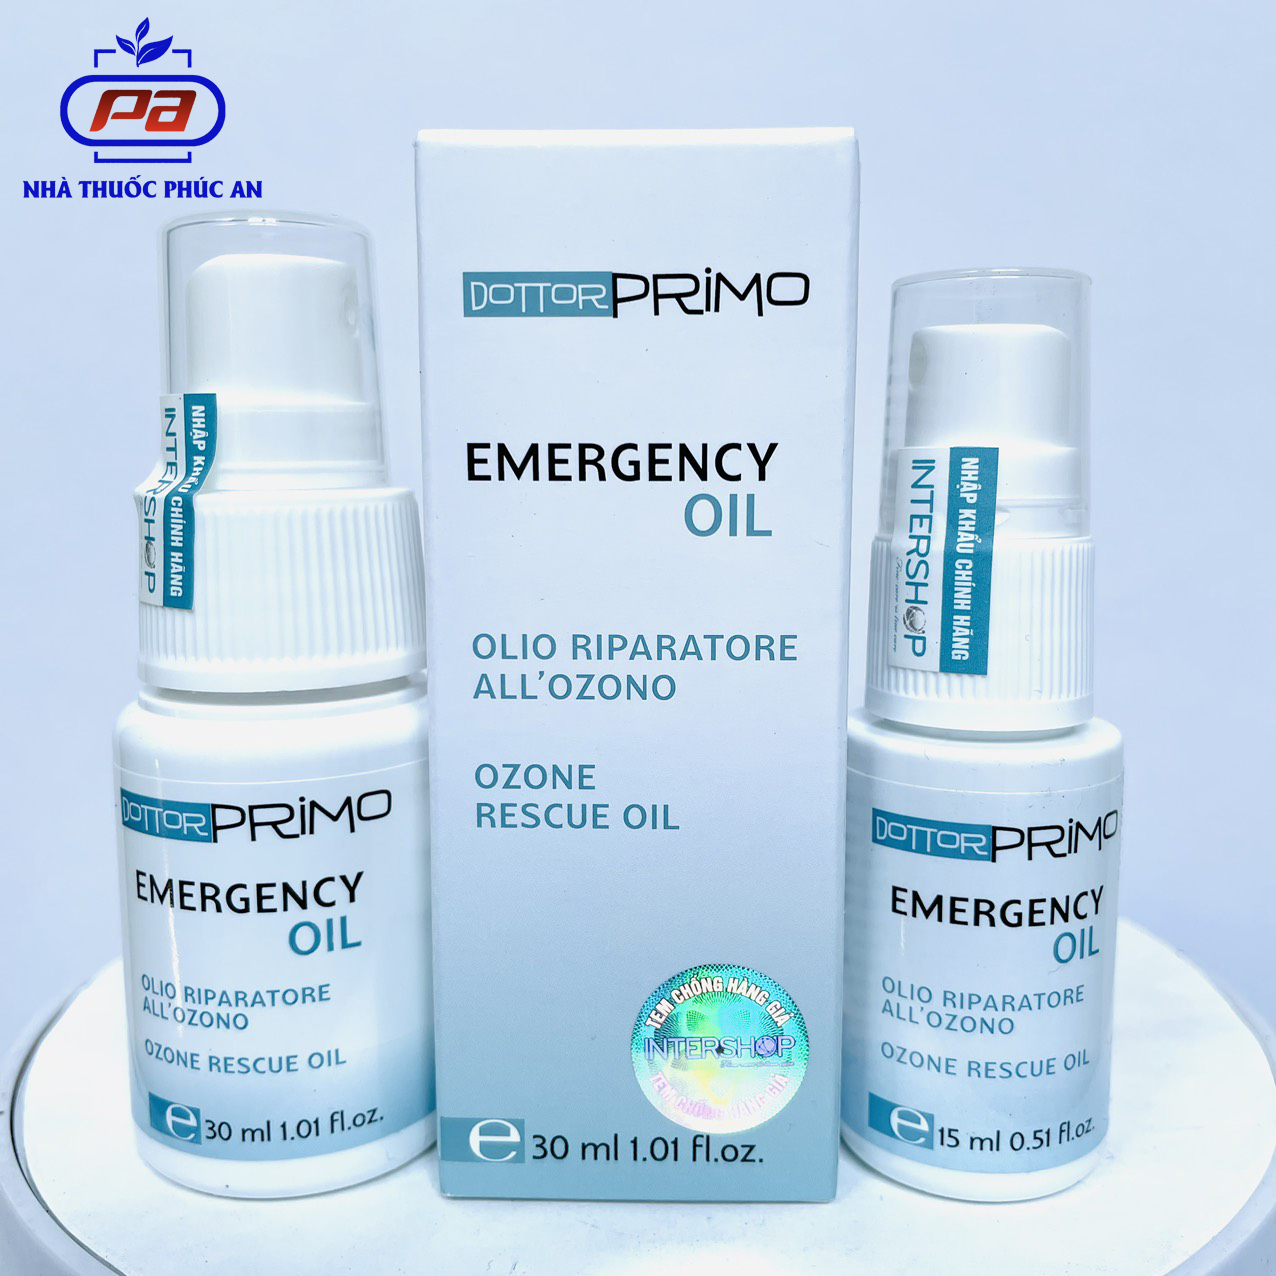 Dầu xịt vết thương DottorPrimo Emergency Oil 15ml giúp mau lành vết thương, ngăn nhiễm trùng